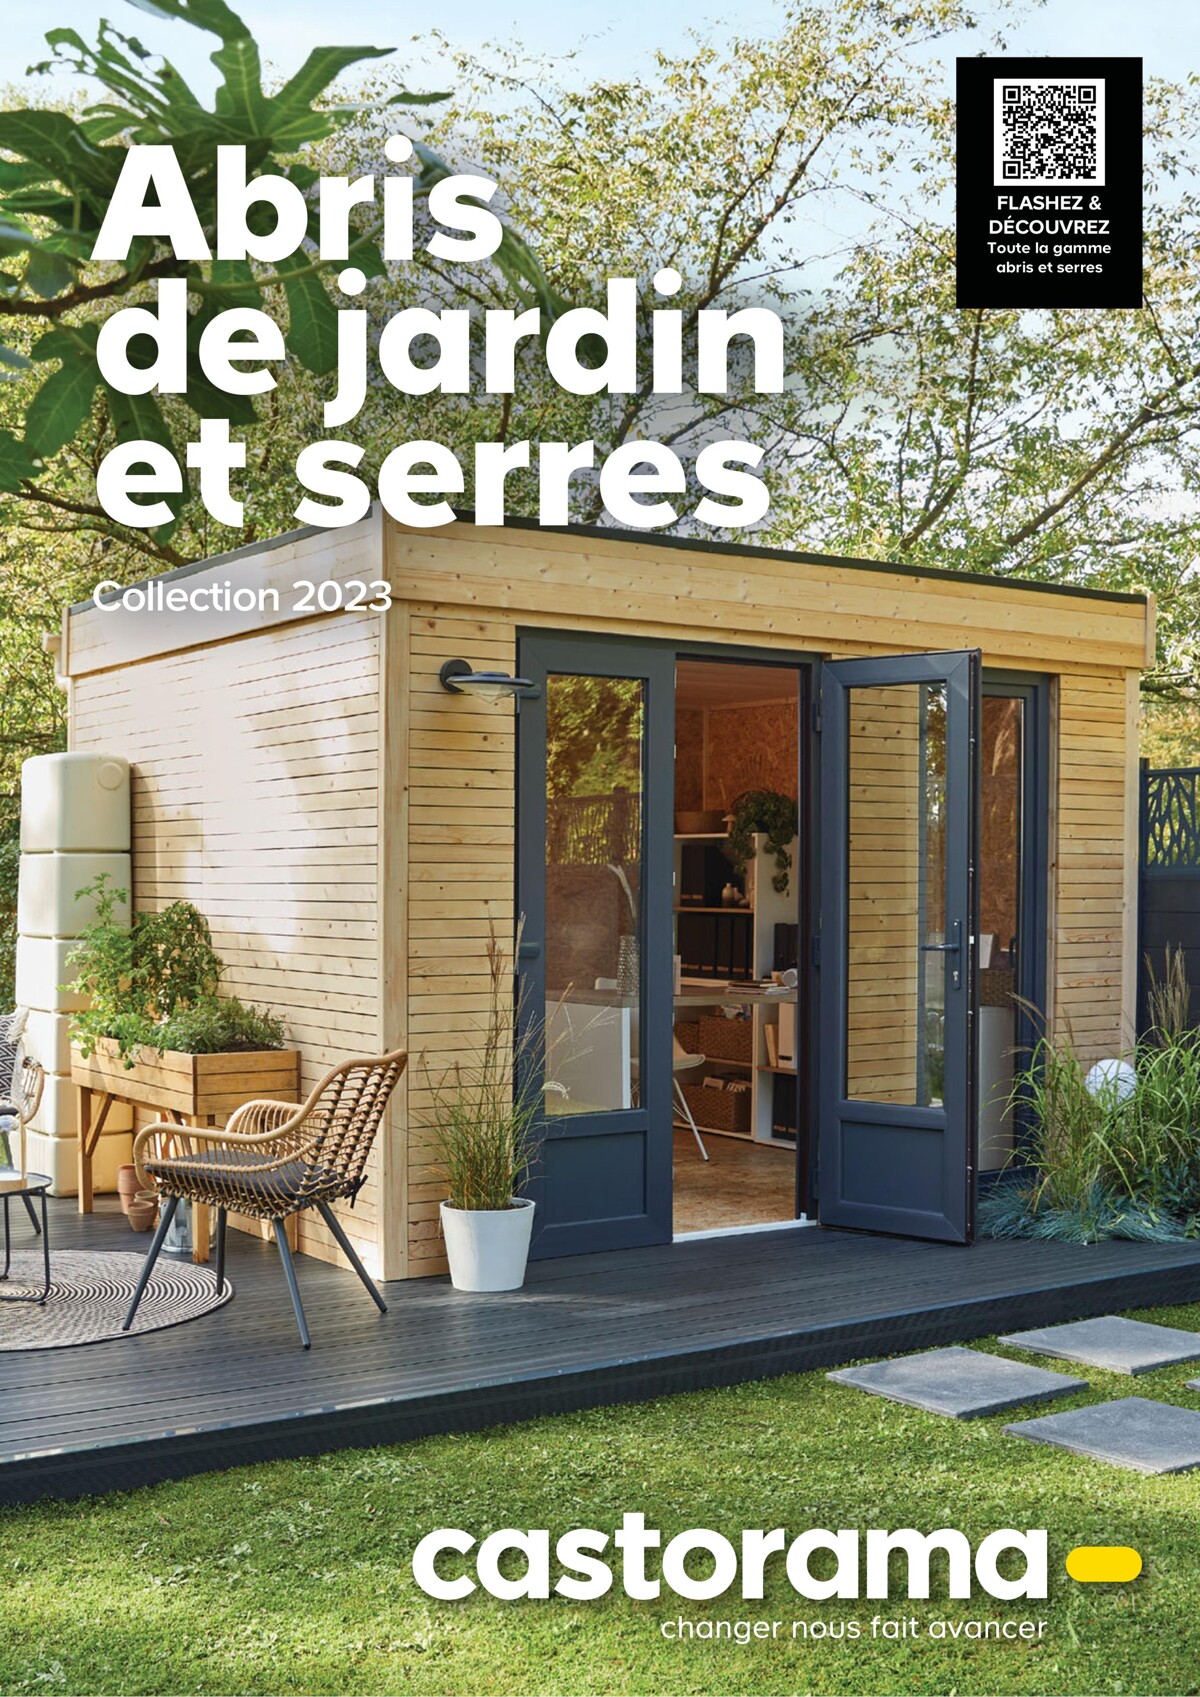 Catalogue Abris de jardin et serres Collection 2023, page 00001